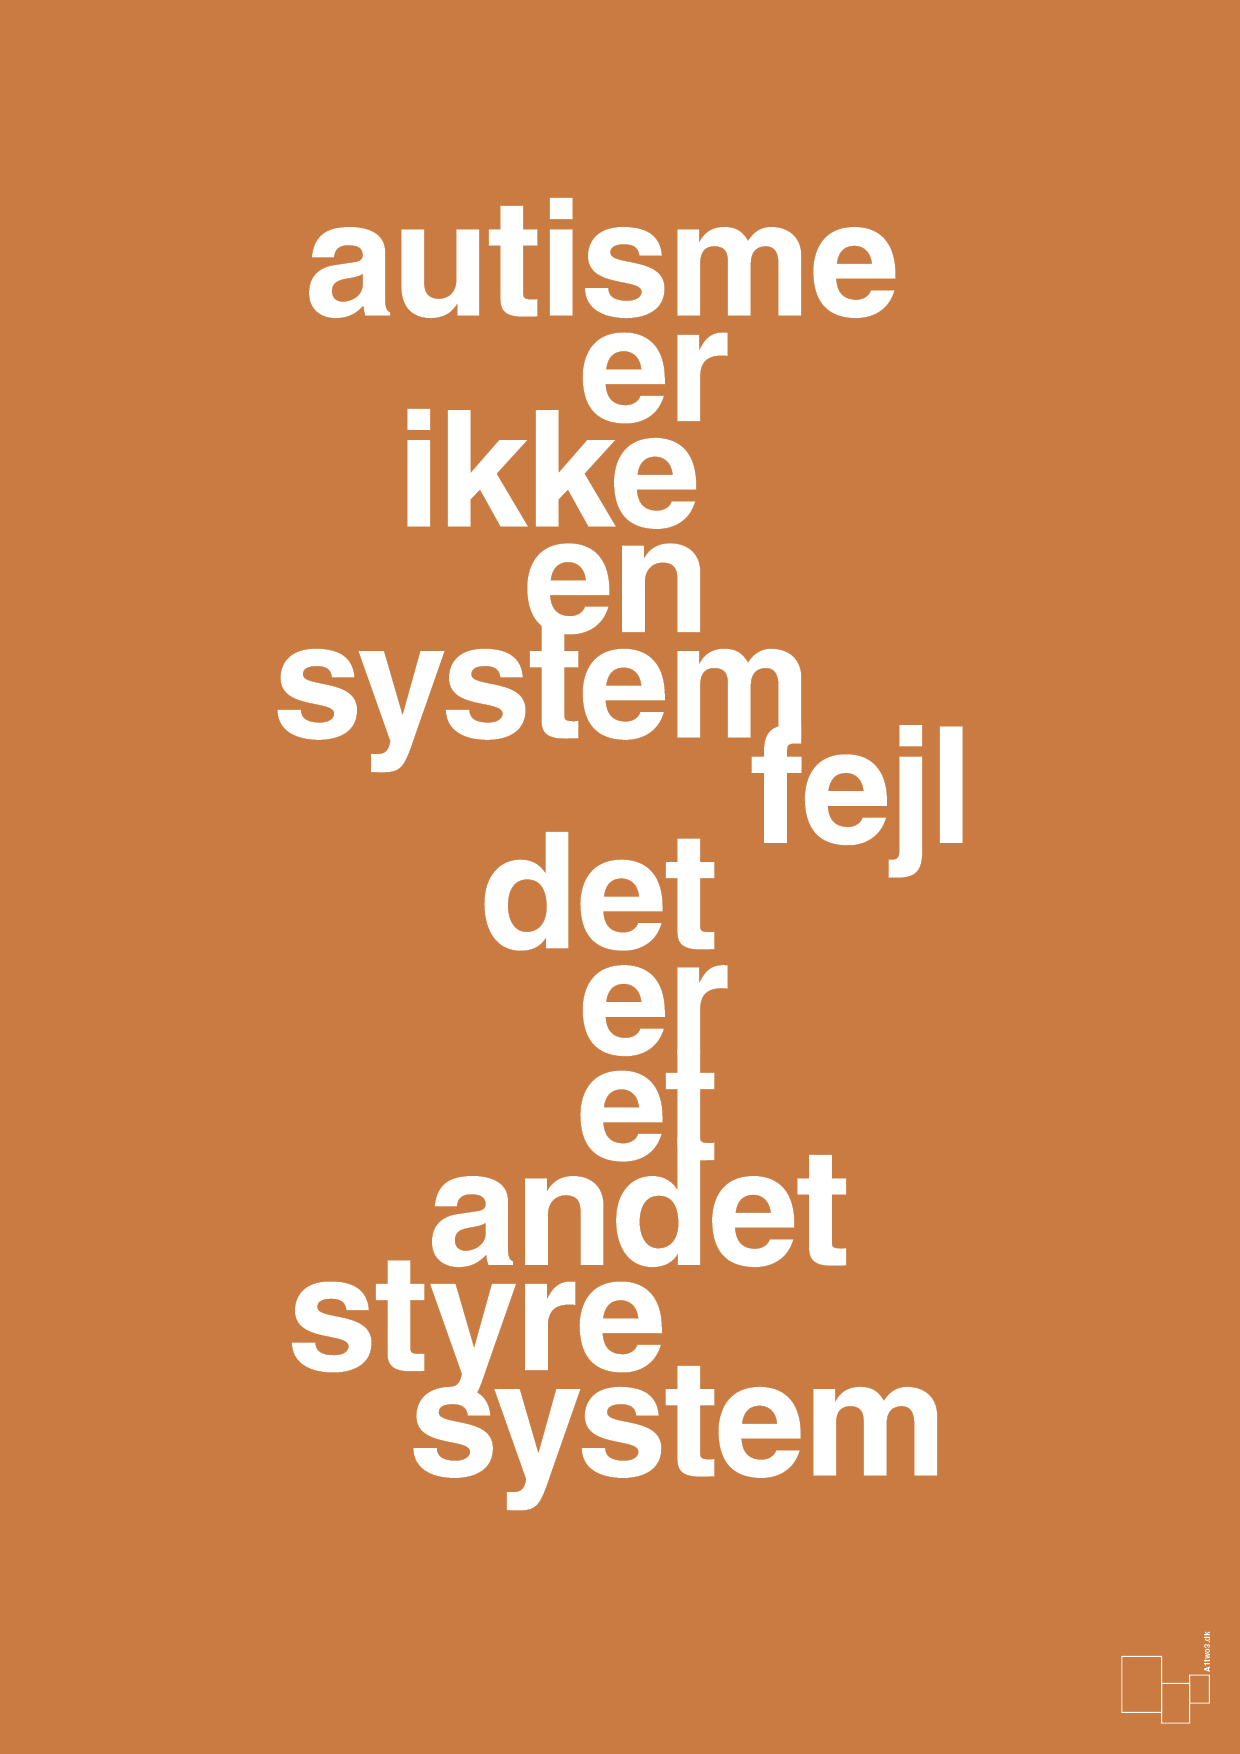 autisme er ikke en systemfejl - Plakat med Samfund i Rumba Orange